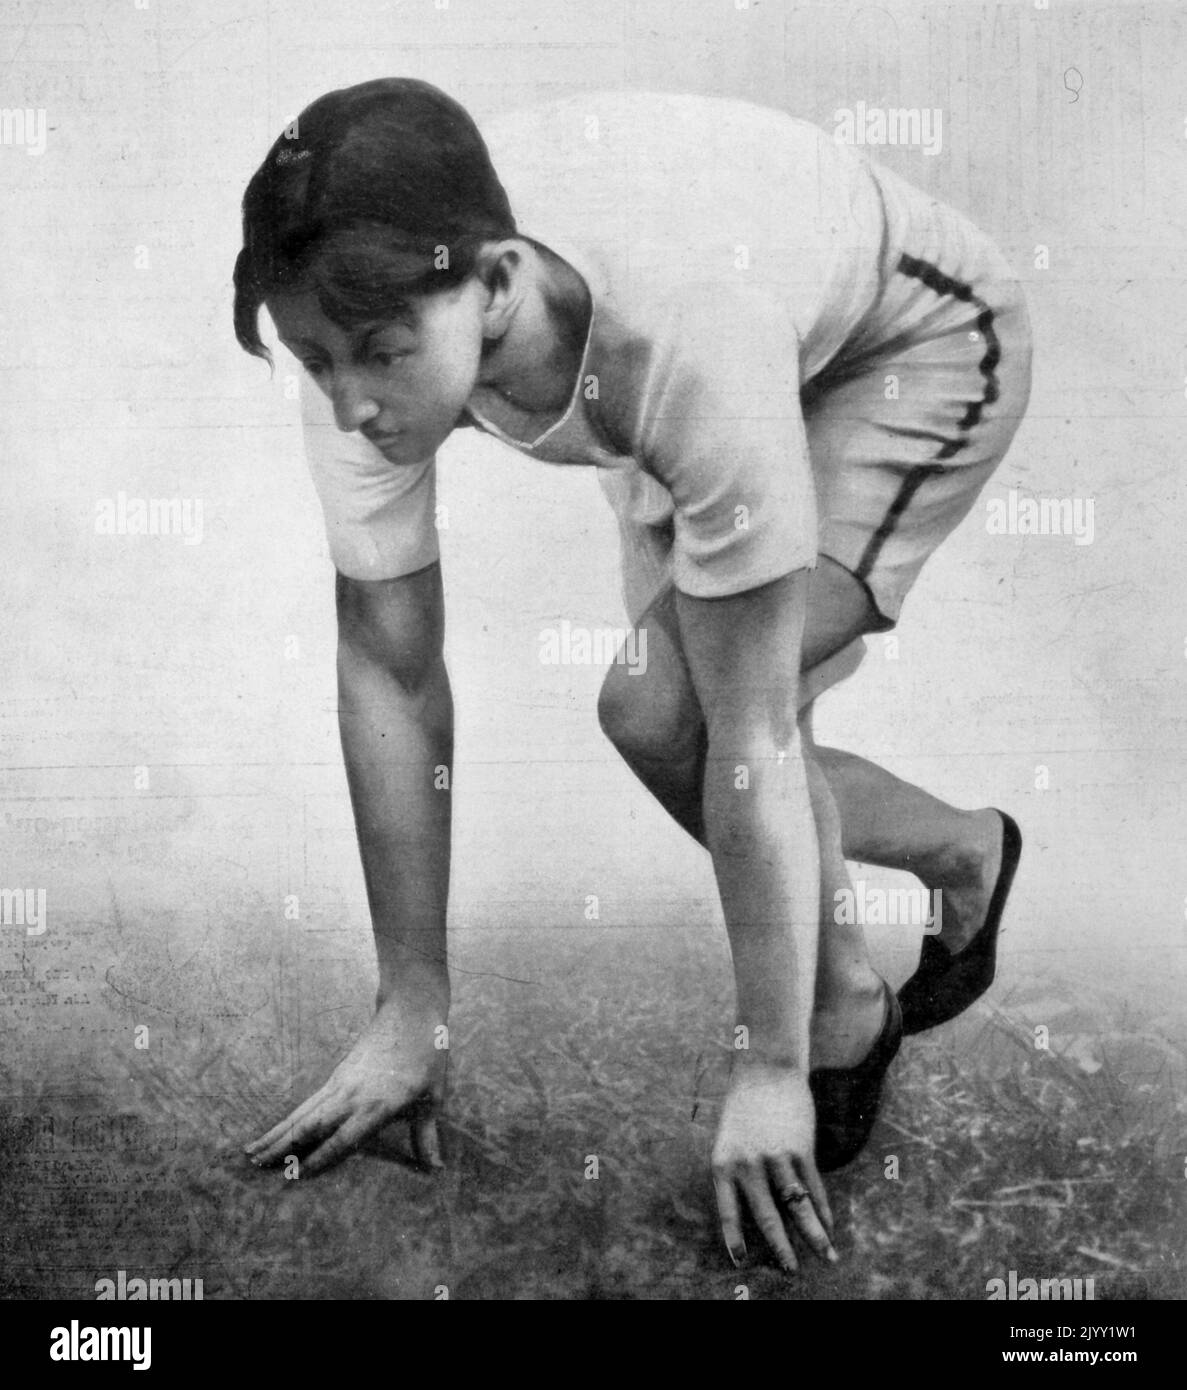 Arthur Francis Duffey (1879 - 1955), athlète américain qui a participé aux Jeux olympiques d'été de 1900 à Paris, France. Il a été un ancien de la classe 1899 de l'Académie de Worcester et de l'Université de Georgetown. Il était originaire de Boston, Massachusetts et après sa carrière sportive était un écrivain et rédacteur sportif et s'est installé dans la région de Boston. Duffey a participé à l'épreuve de 100 mètres des Jeux olympiques d'été de 1900, se classant quatrième au classement général. Il a gagné sa chaleur du premier tour avec un temps de 11,4 secondes, est tombé à 11,0 secondes pour gagner sa demi-finale, et a pris une avance tôt dans la finale avant pullin Banque D'Images